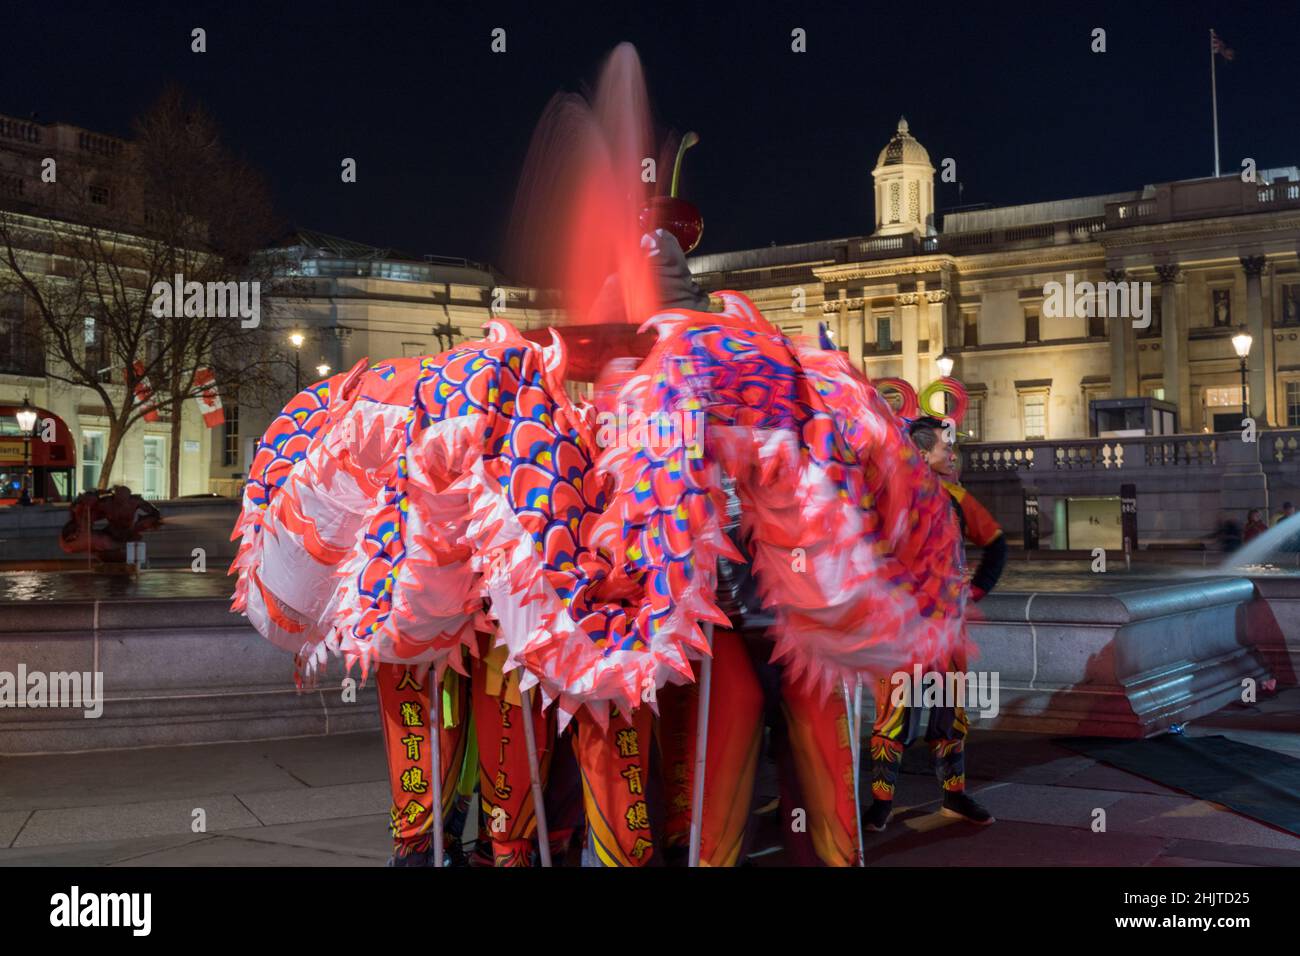 Londres UK 31st Jan 2022: La columna de Nelson se ve iluminada en mandarina en la víspera del Año Nuevo Chino para desear a la gente un Feliz Año Nuevo Chino (Año Nuevo Lunar). Las habituales celebraciones del Año Nuevo Chino han sido canceladas este año. En la plaza Trafalgar de Londres se realizó una pequeña ceremonia de baile de leones y dragones a Londoners, vips y dignatarios, representantes del alcalde de Londres, lord Mayor de Westminster. Crédito: Xiu Bao/Alamy Live News Foto de stock